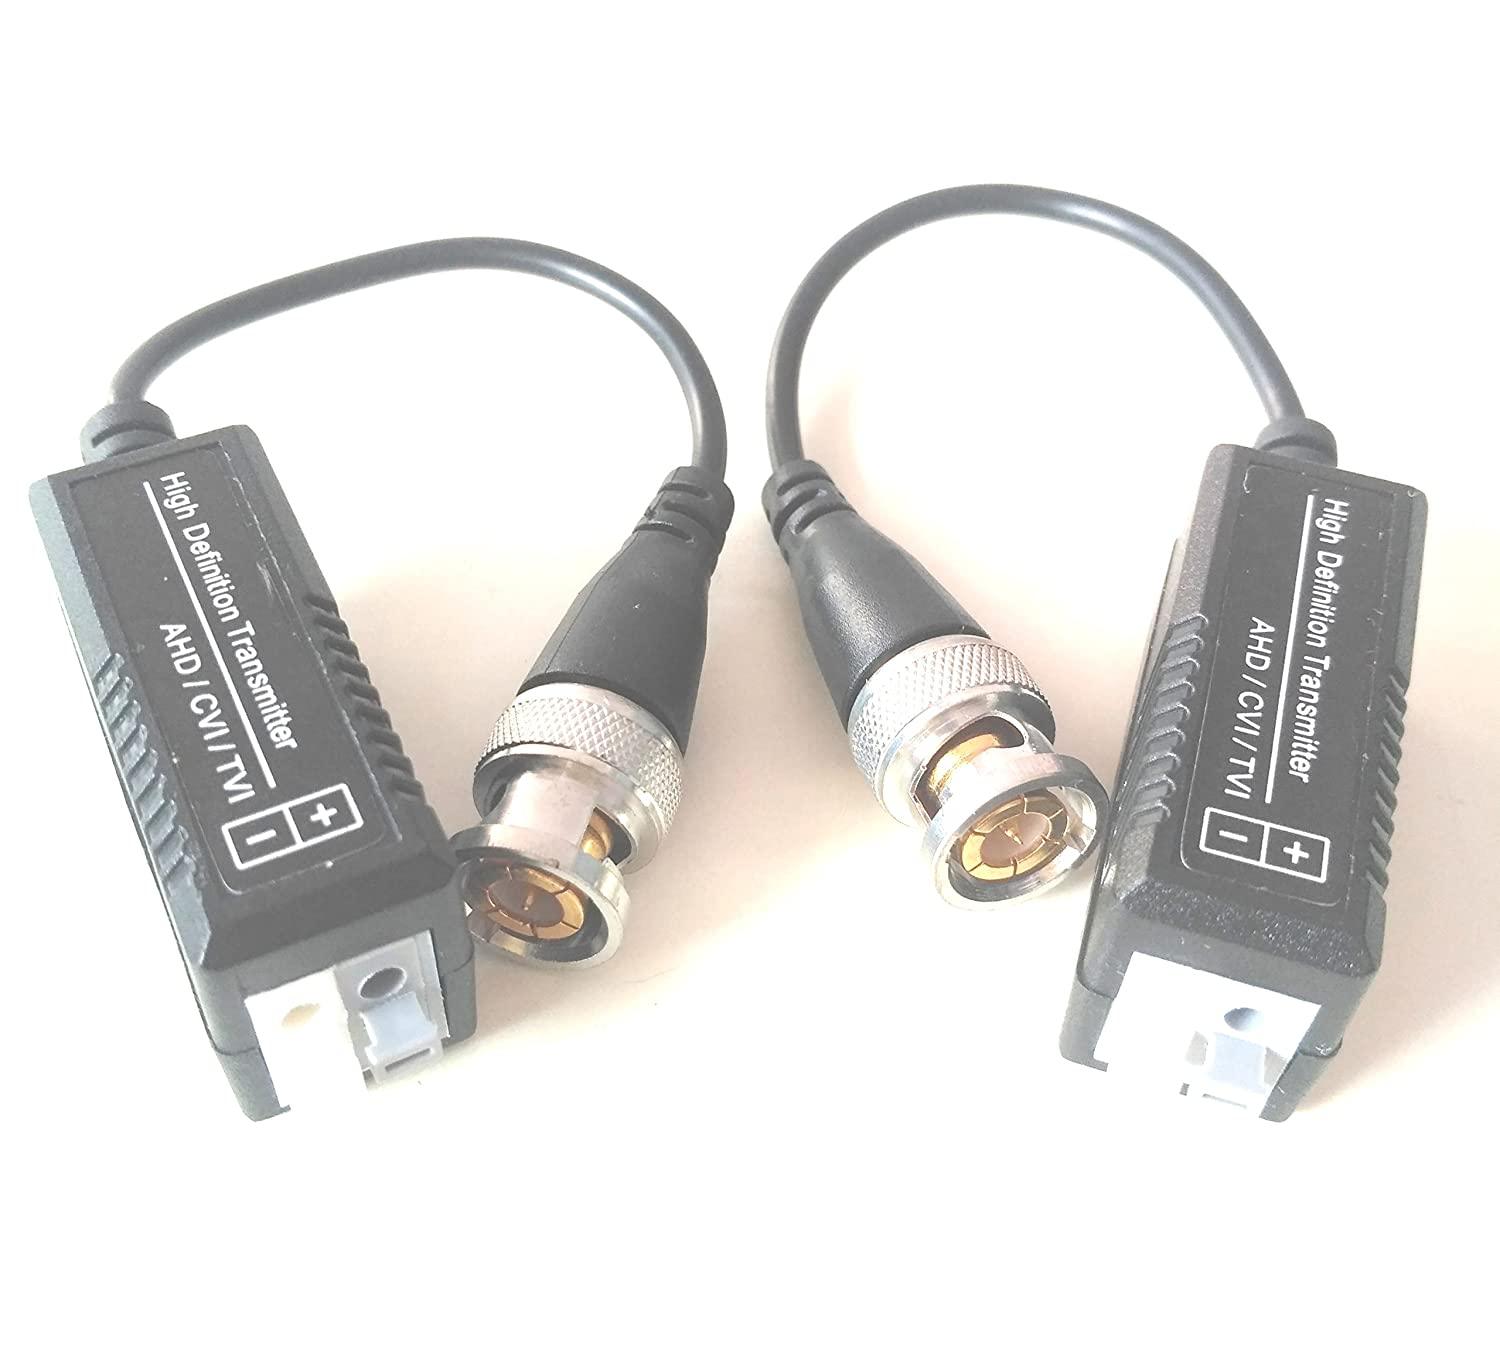 Passive Video Balun for Cctv HD Camera (Black)-cctv accessories-dealsplant